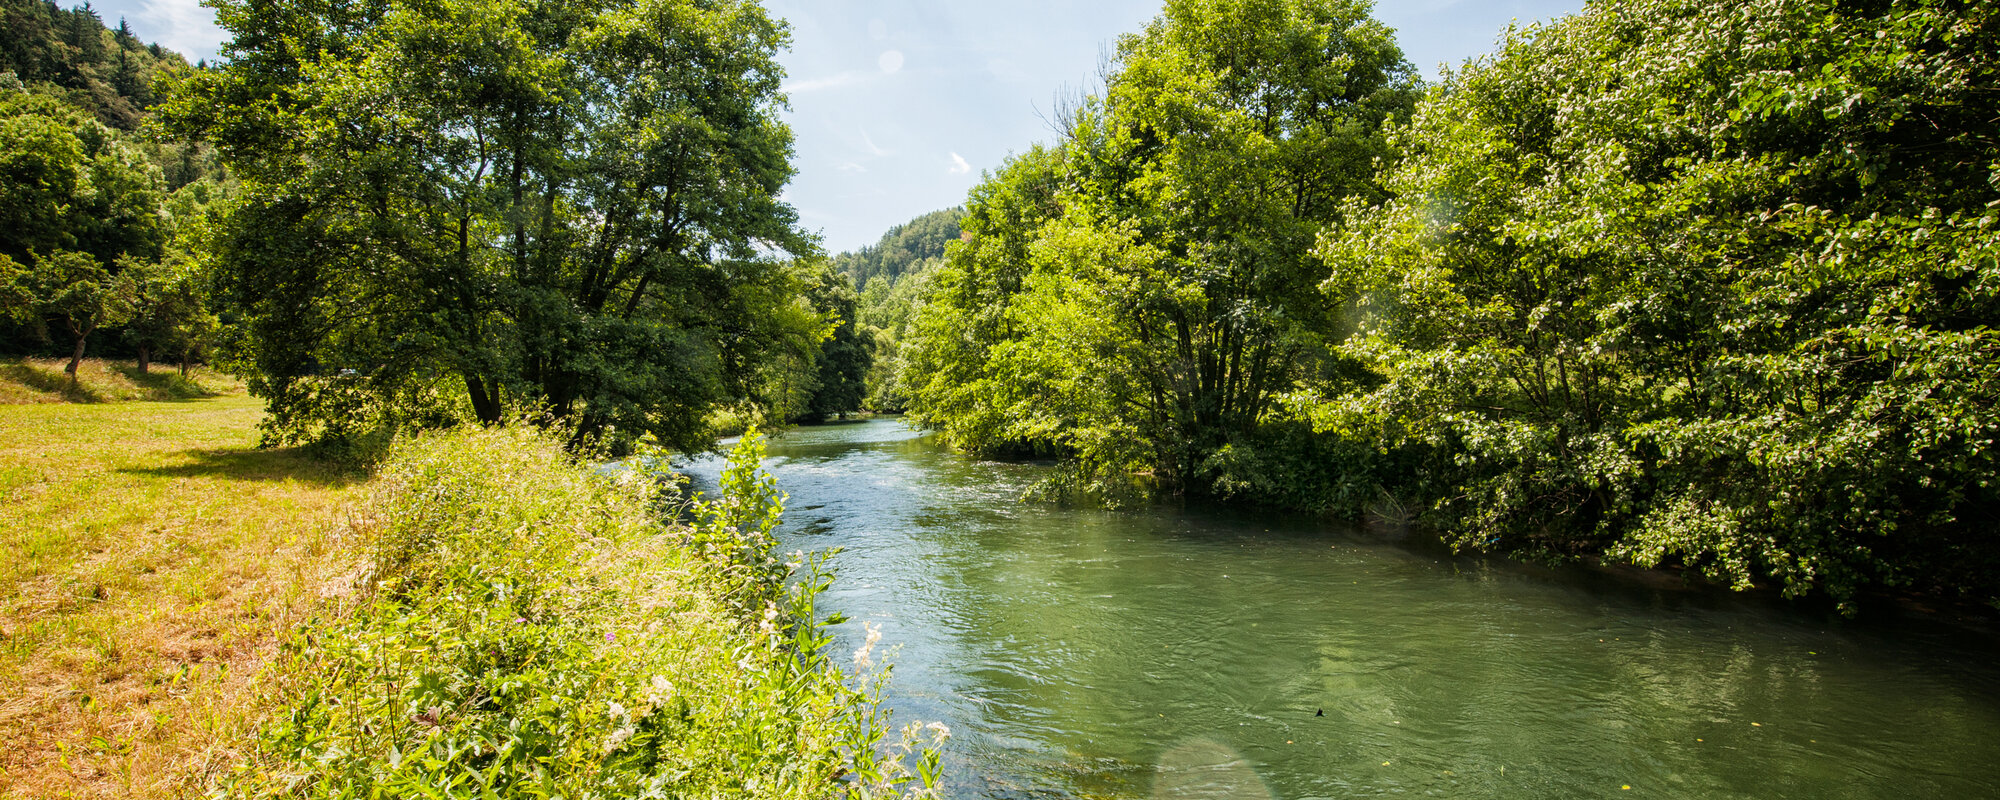 Der Fluss schlängeld sich an einer Wiese entlang und ist teilweise von Bäumen gesäumt.